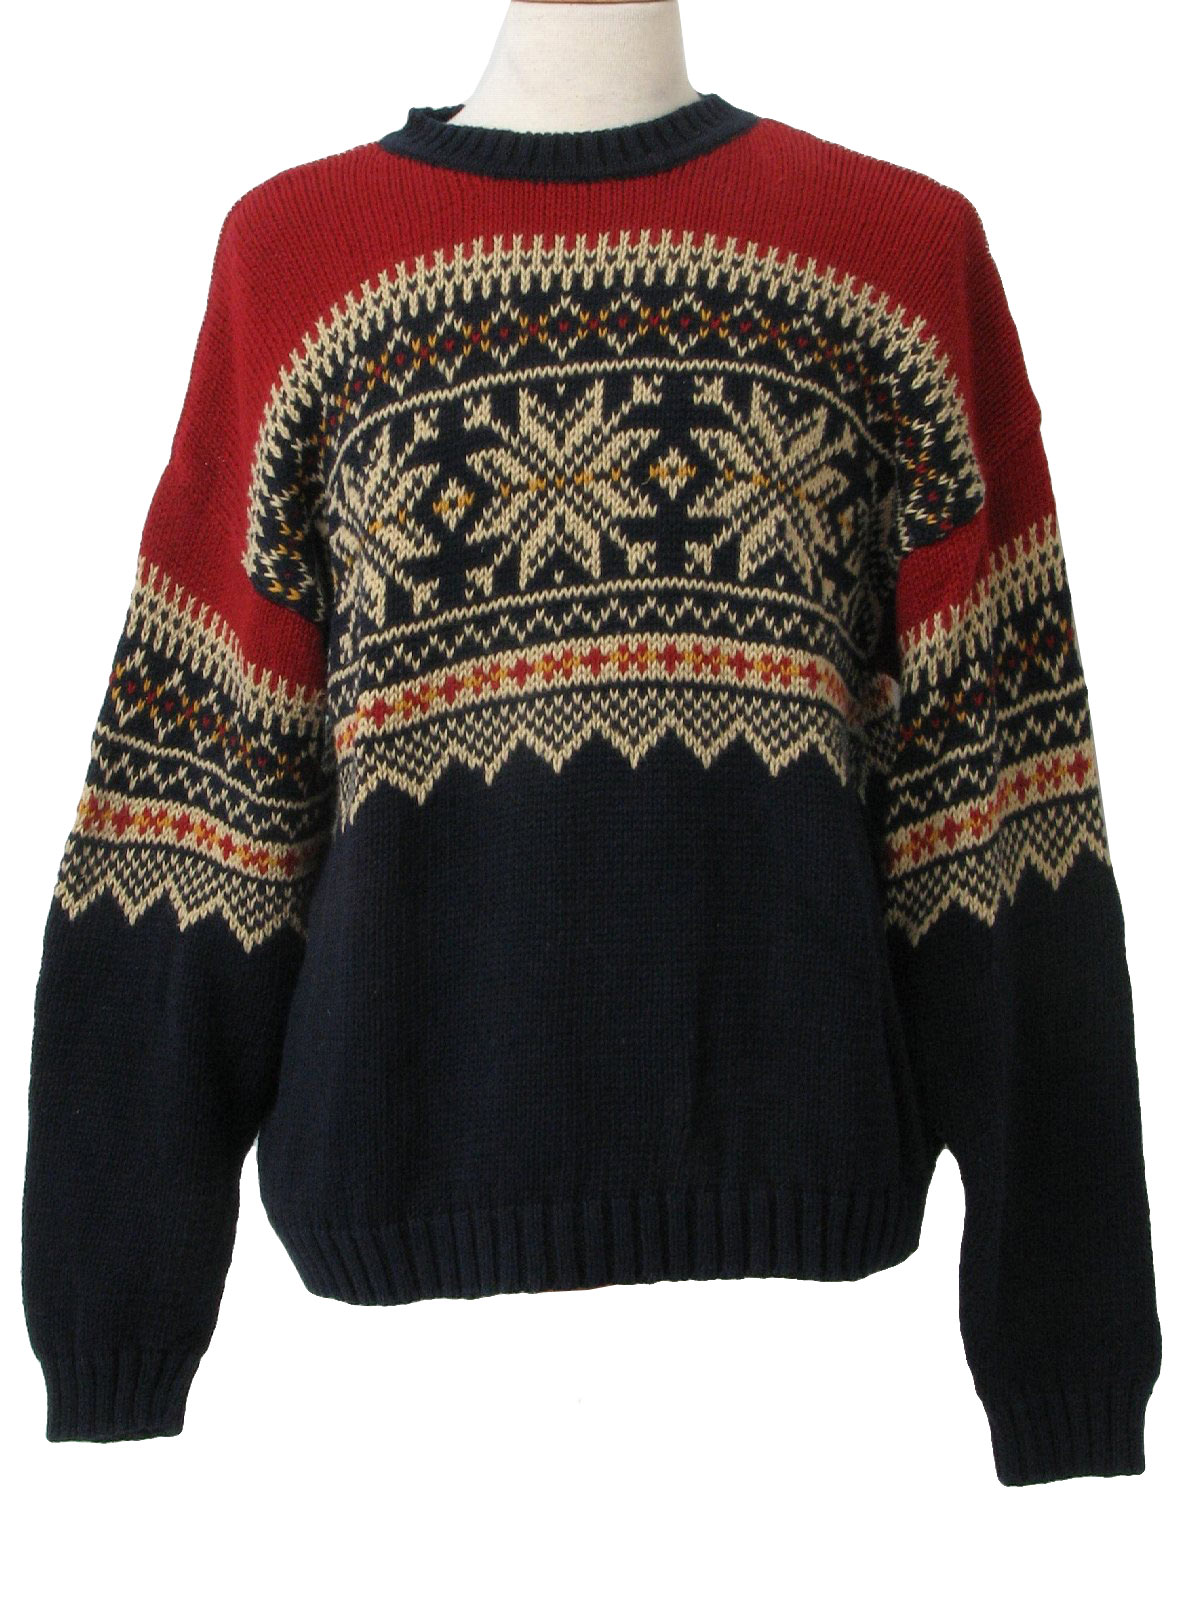 Retro 1990's Sweater (Abercrombie) : 90s -Abercrombie- Mens navy blue ...